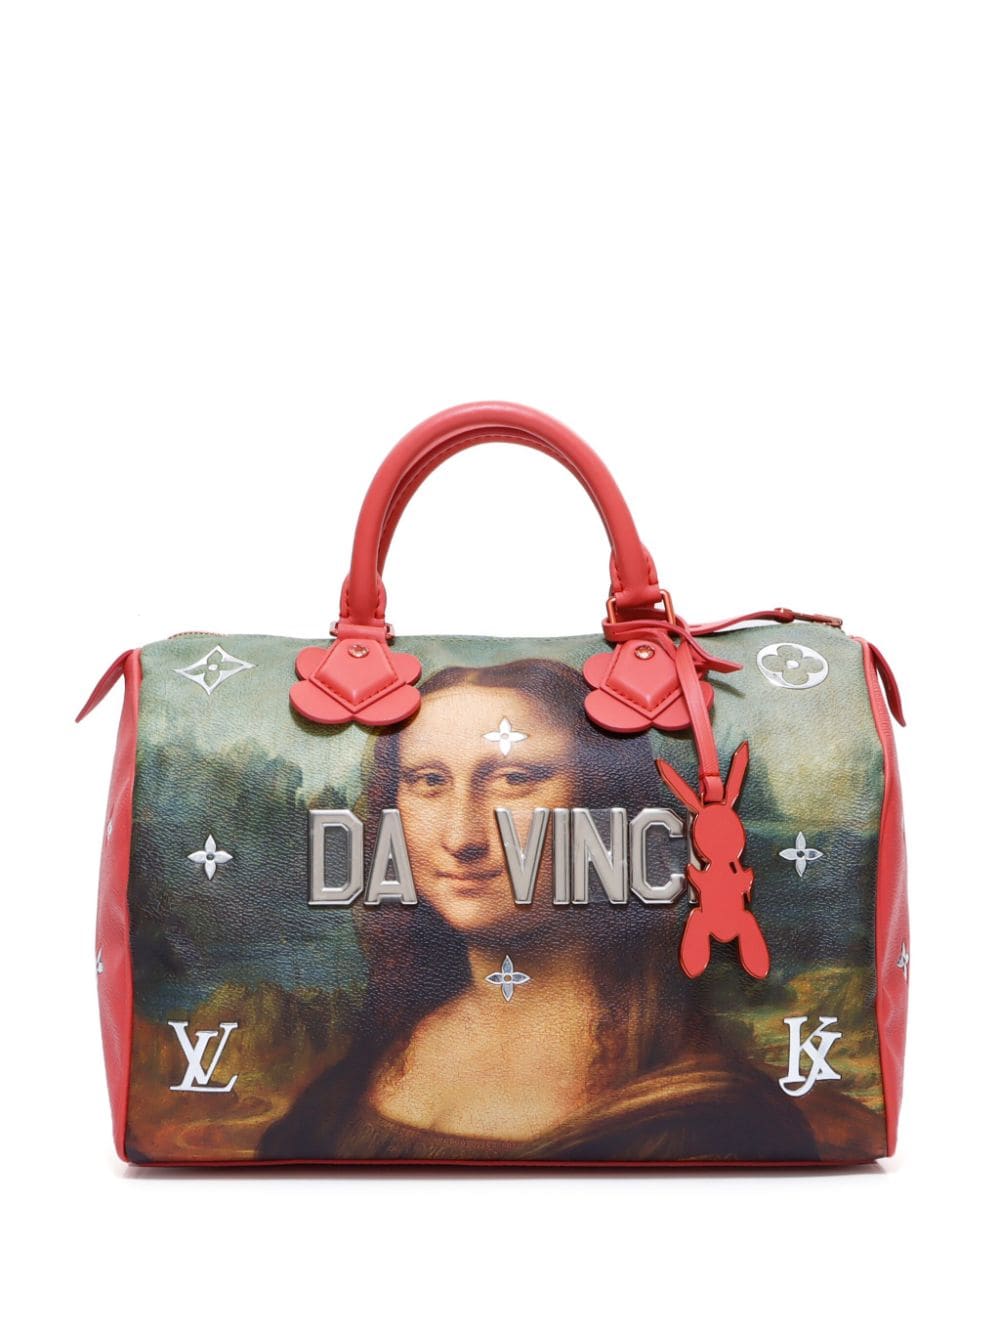 Louis Vuitton Pre-Owned x Jeff Koons Speedy 30 handbag - Red von Louis Vuitton Pre-Owned